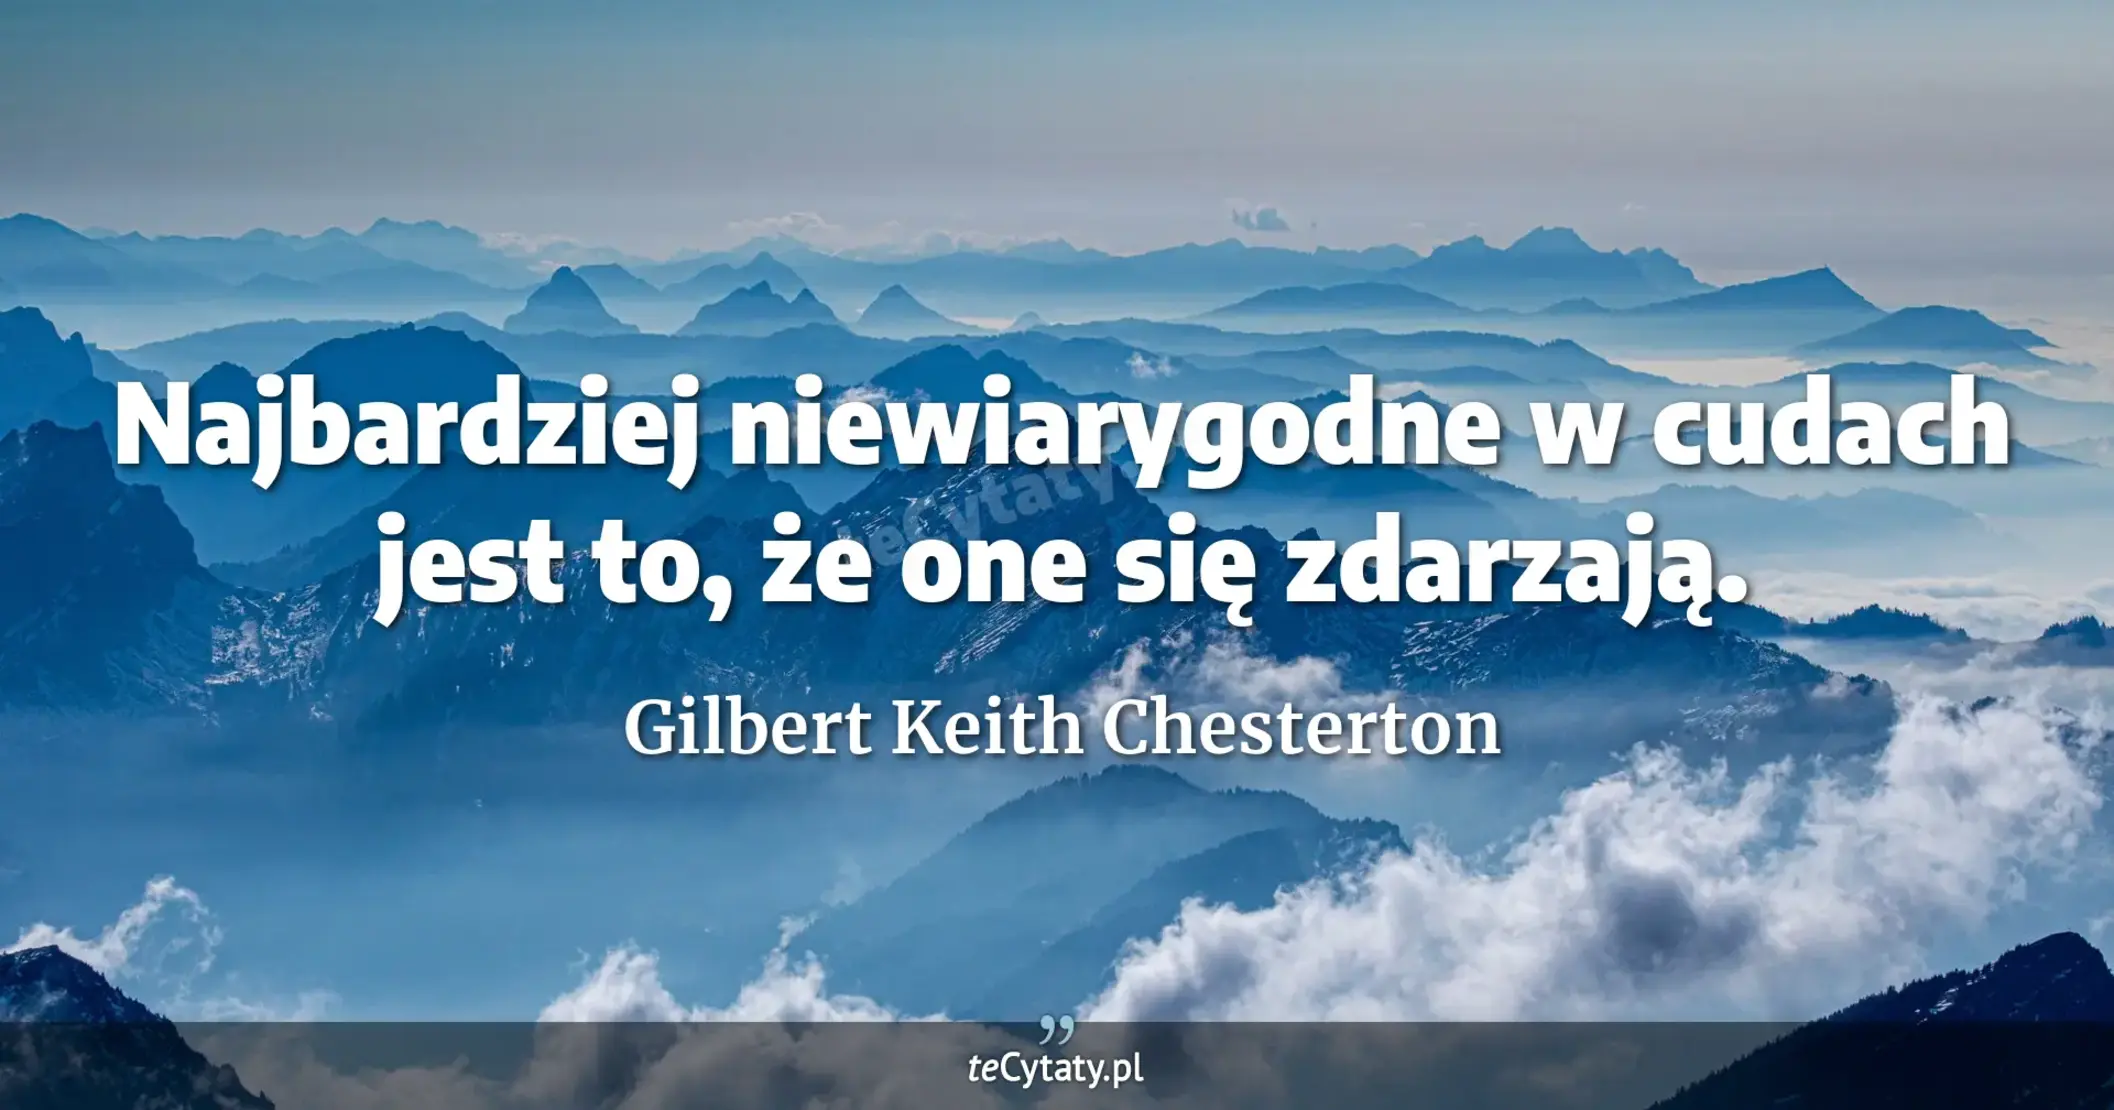 Najbardziej niewiarygodne w cudach jest to, że one się zdarzają. - Gilbert Keith Chesterton